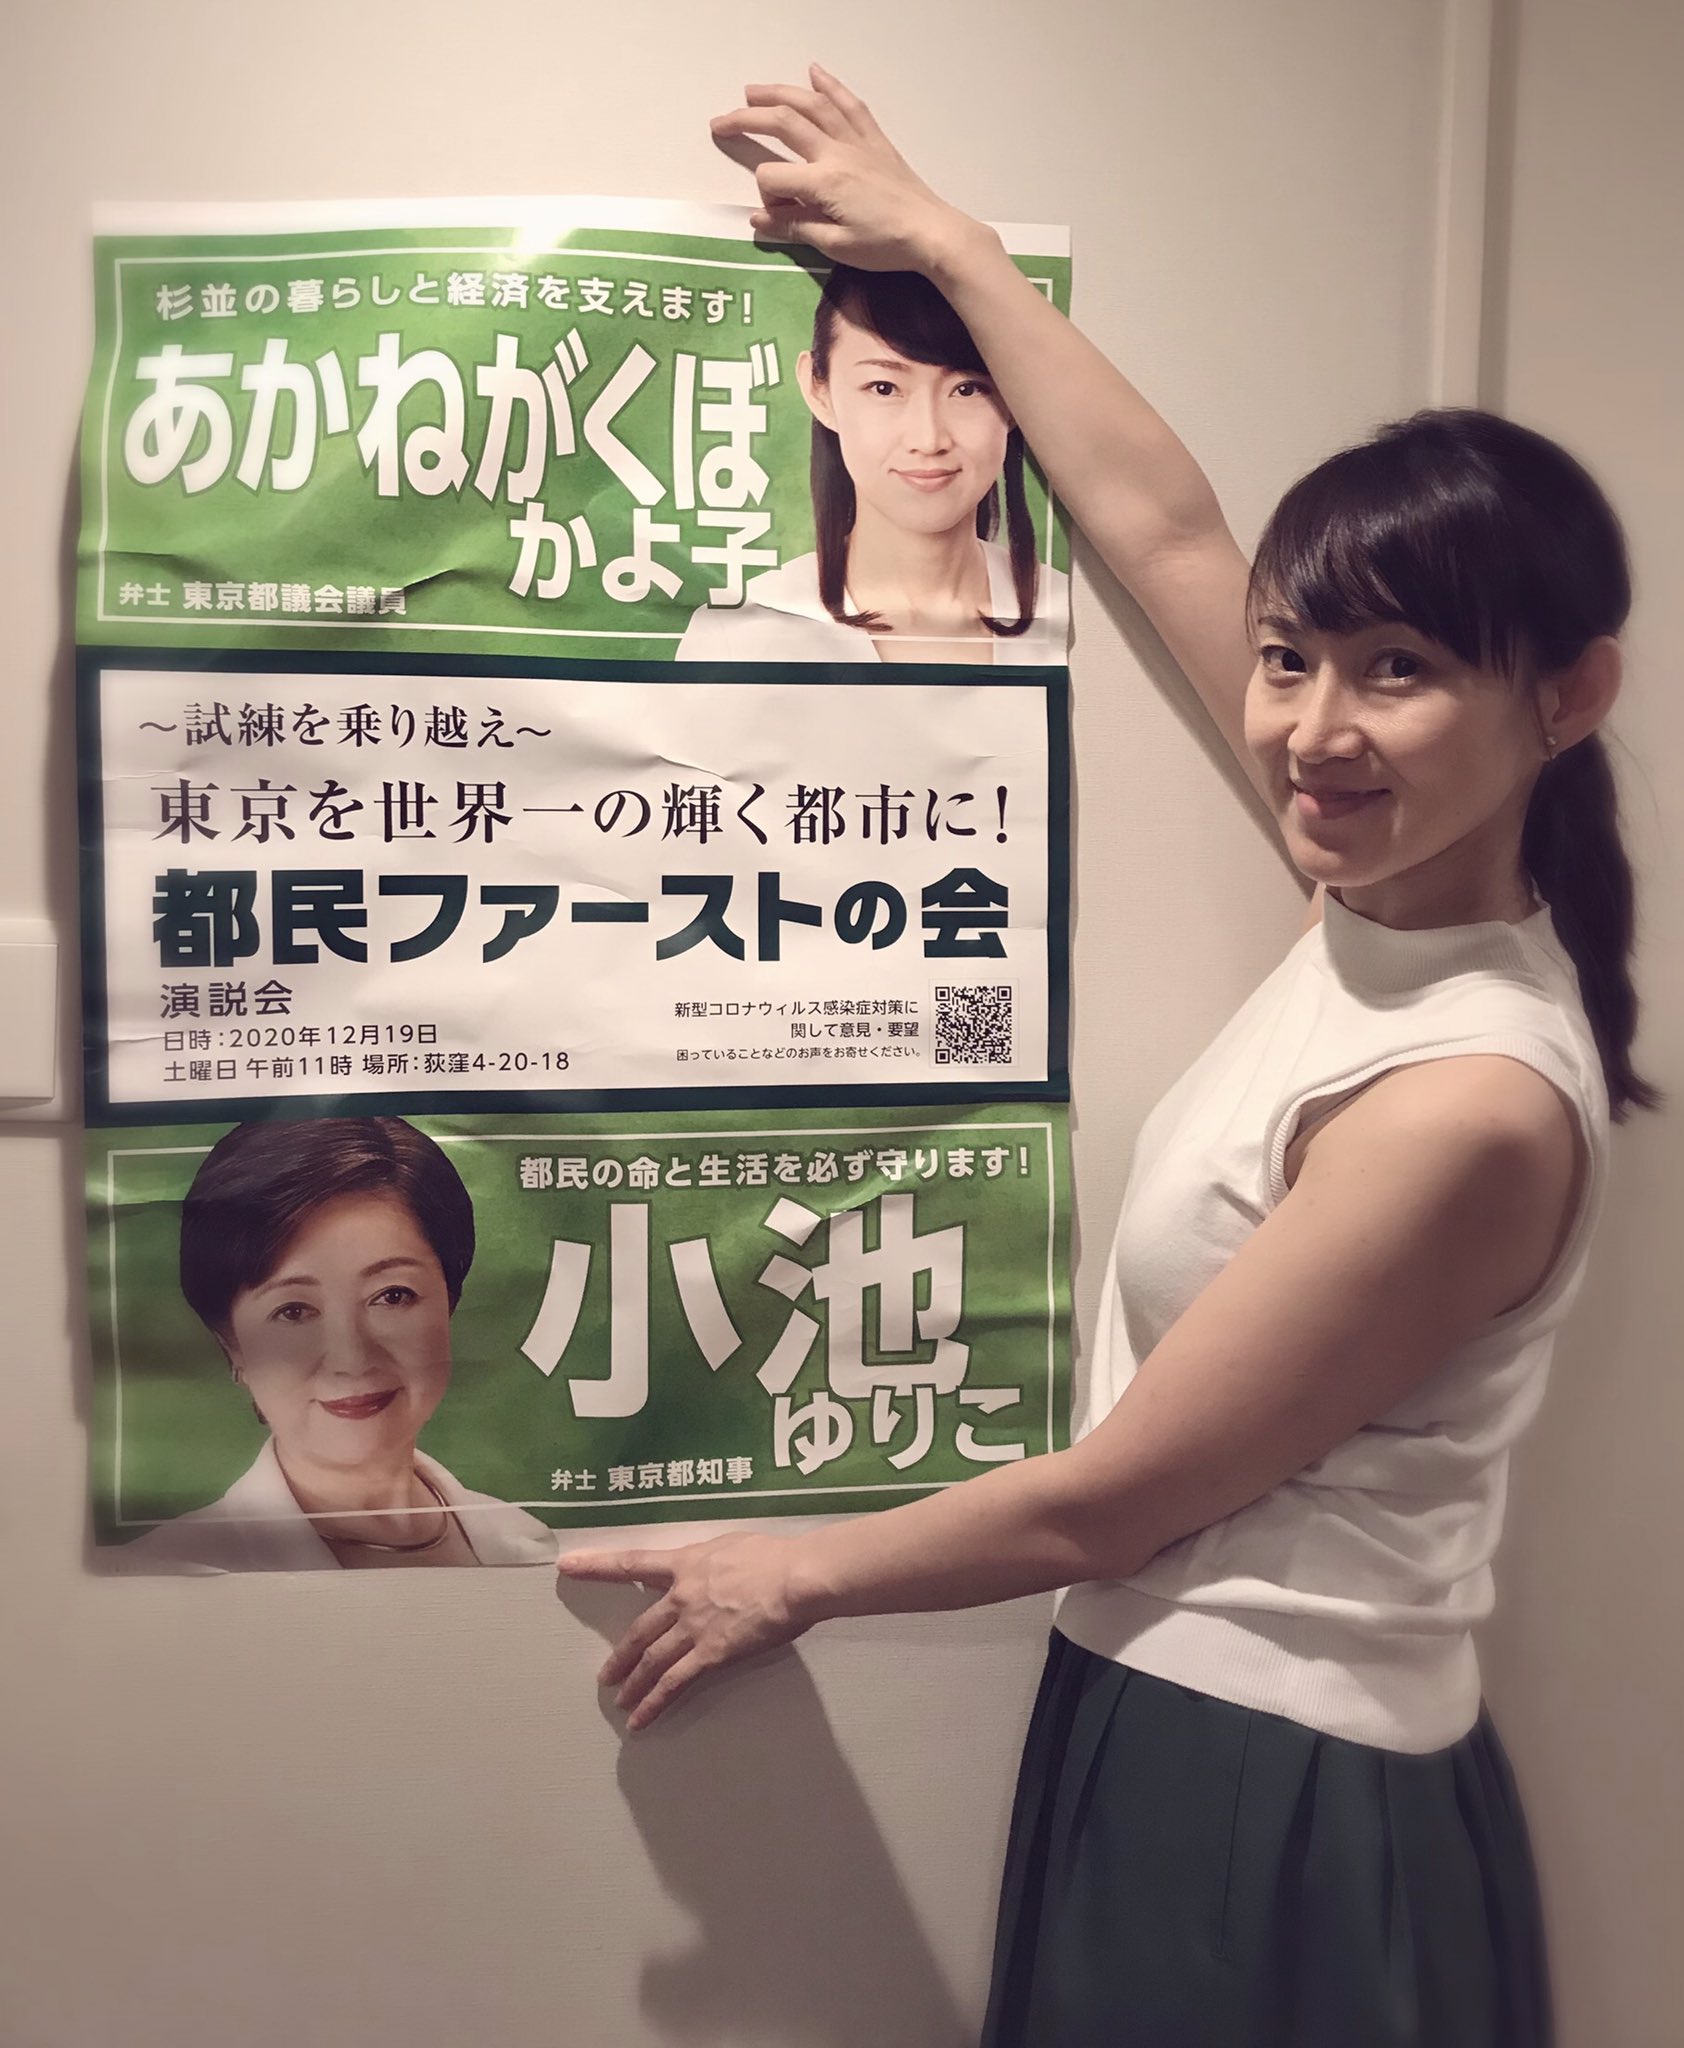 あかねがくぼ かよ子 東京都議会議員 杉並区 都民ファーストの会 いよいよ 都議会議員 ２期目の挑戦です 厳しい戦いですが 誠実に頑張っていきます そこでお願いです 写真のポスターを 杉並区 内で貼らせていただける場所を探しております ご協力